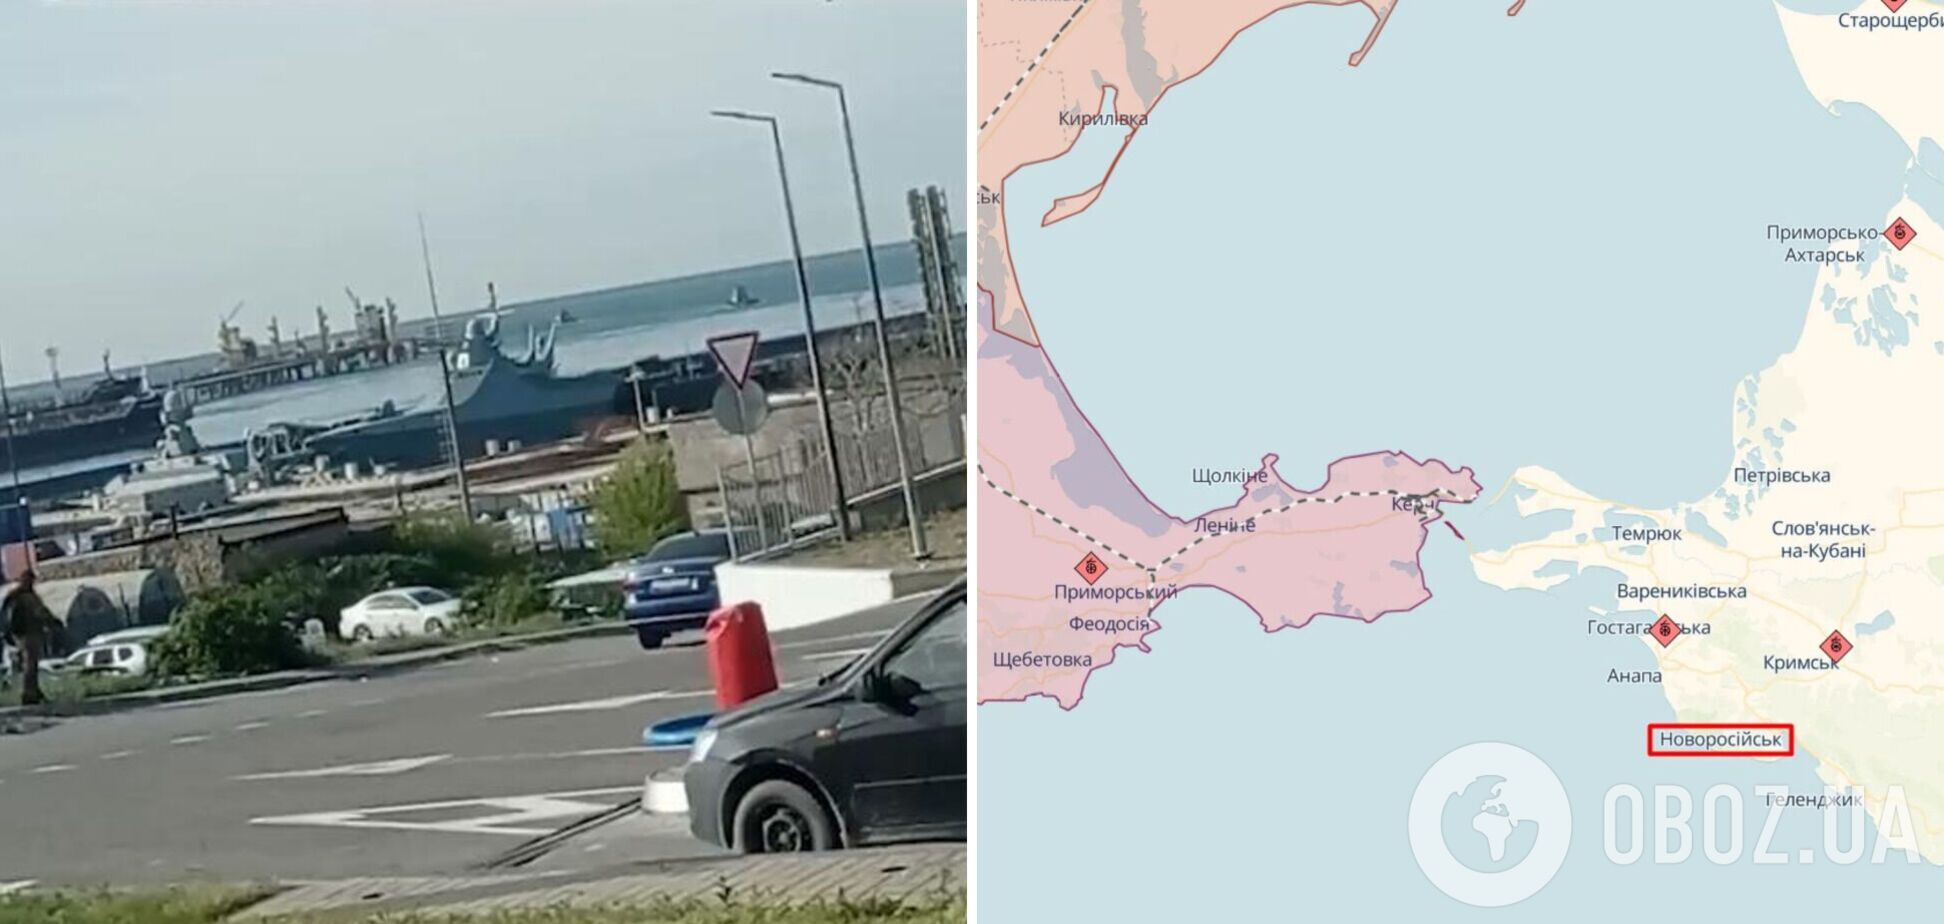 Агенти 'Атеш' розвідали військово-морську базу ЧФ у Новоросійську і натякнули на 'бавовну'. Фото 